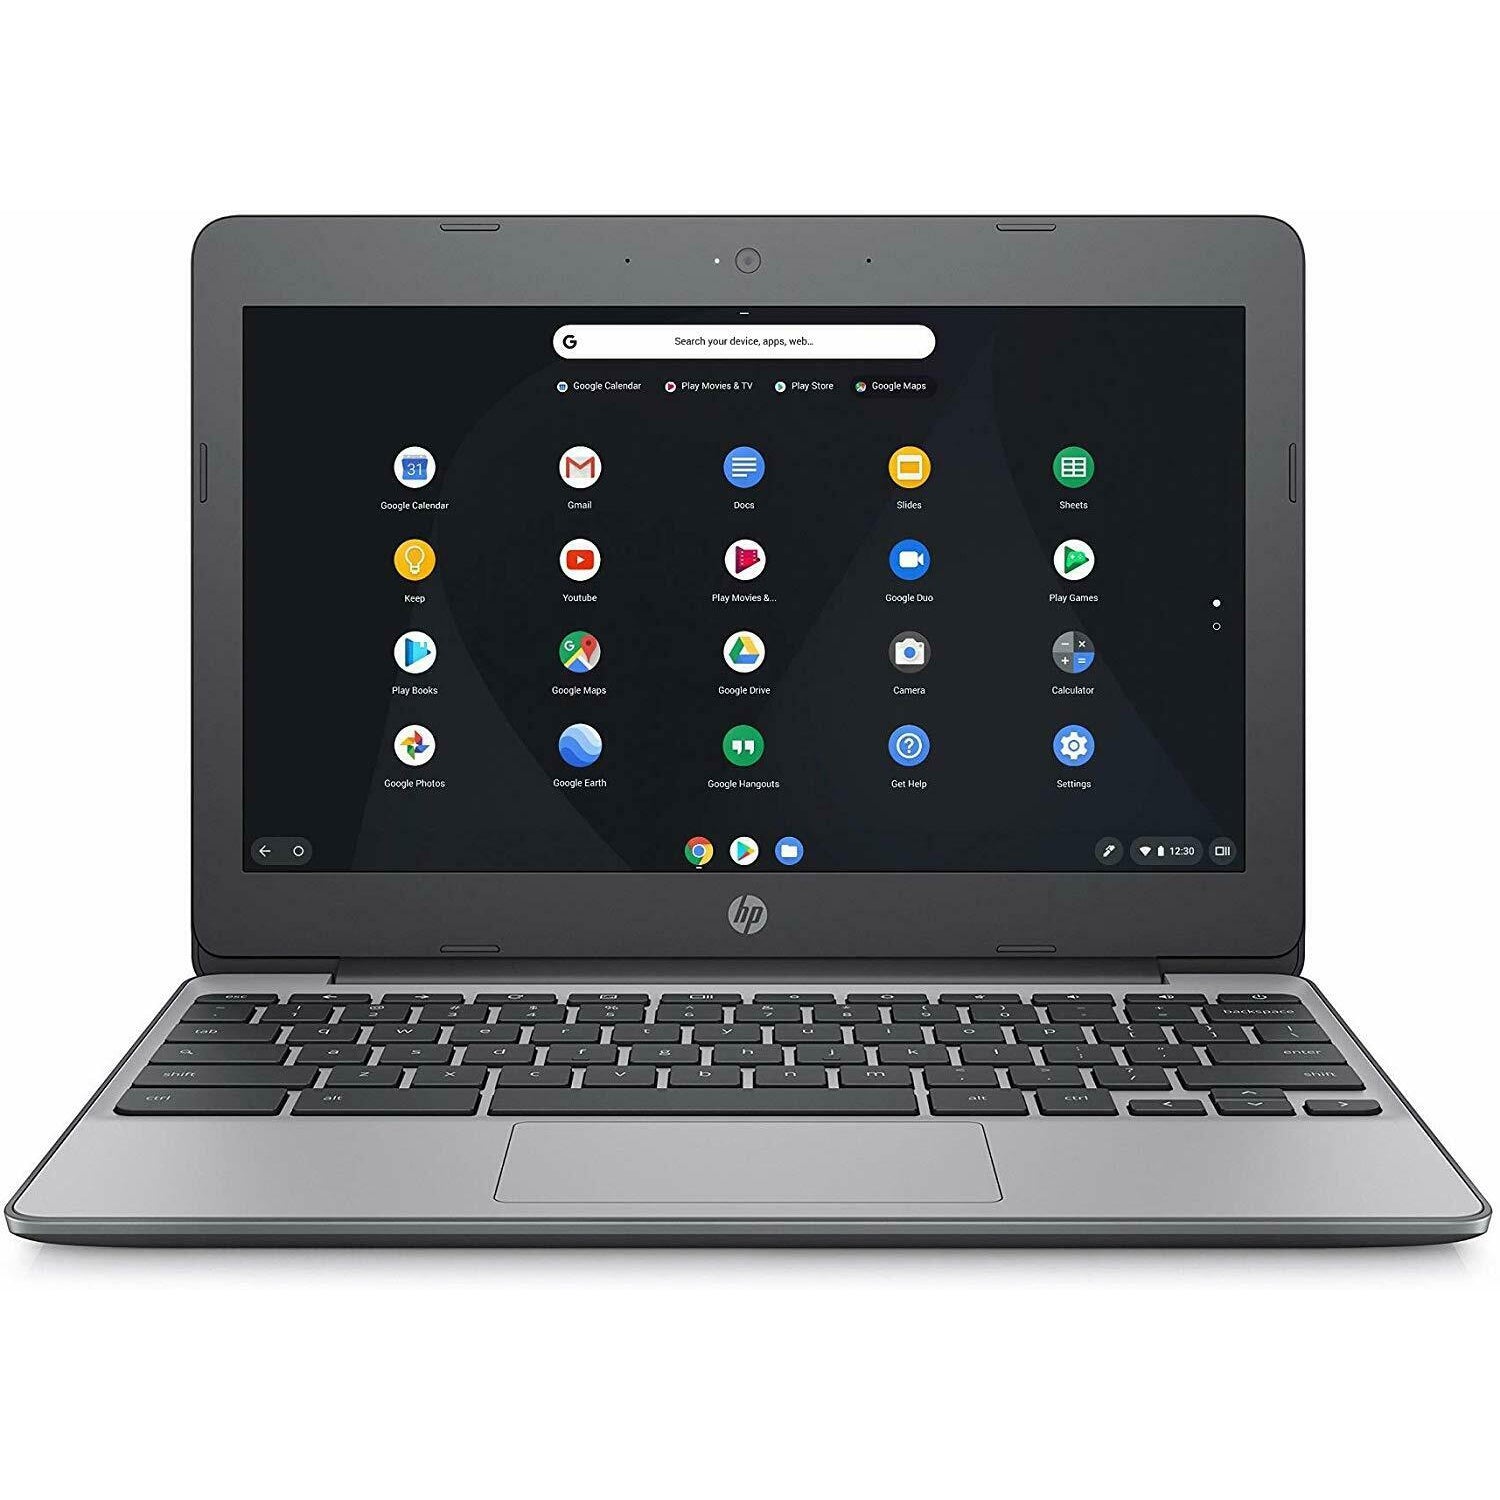 HP Chromebook 11-V001NA Y3V73EA#ABU Intel Celeron N3060 4GB, 16GB, 11.6" Laptop - Grey